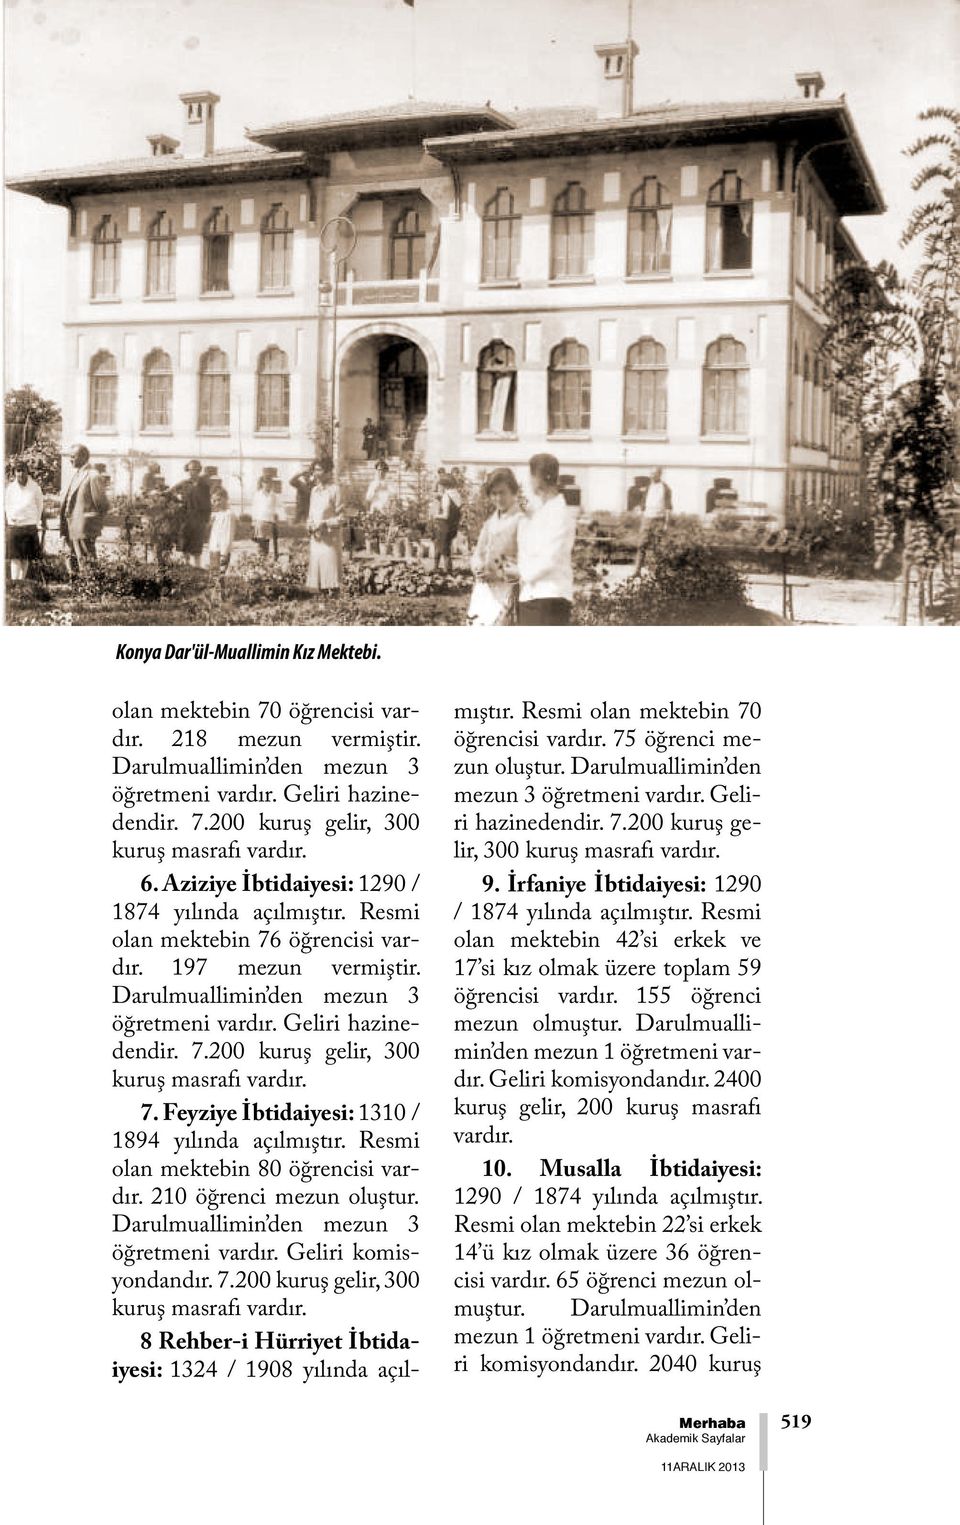 Feyziye İbtidaiyesi: 1310 / 1894 yılında açılmıştır. Resmi olan mektebin 80 öğrencisi 210 öğrenci mezun oluştur. Darulmuallimin den mezun 3 öğretmeni Geliri komisyondandır. 7.